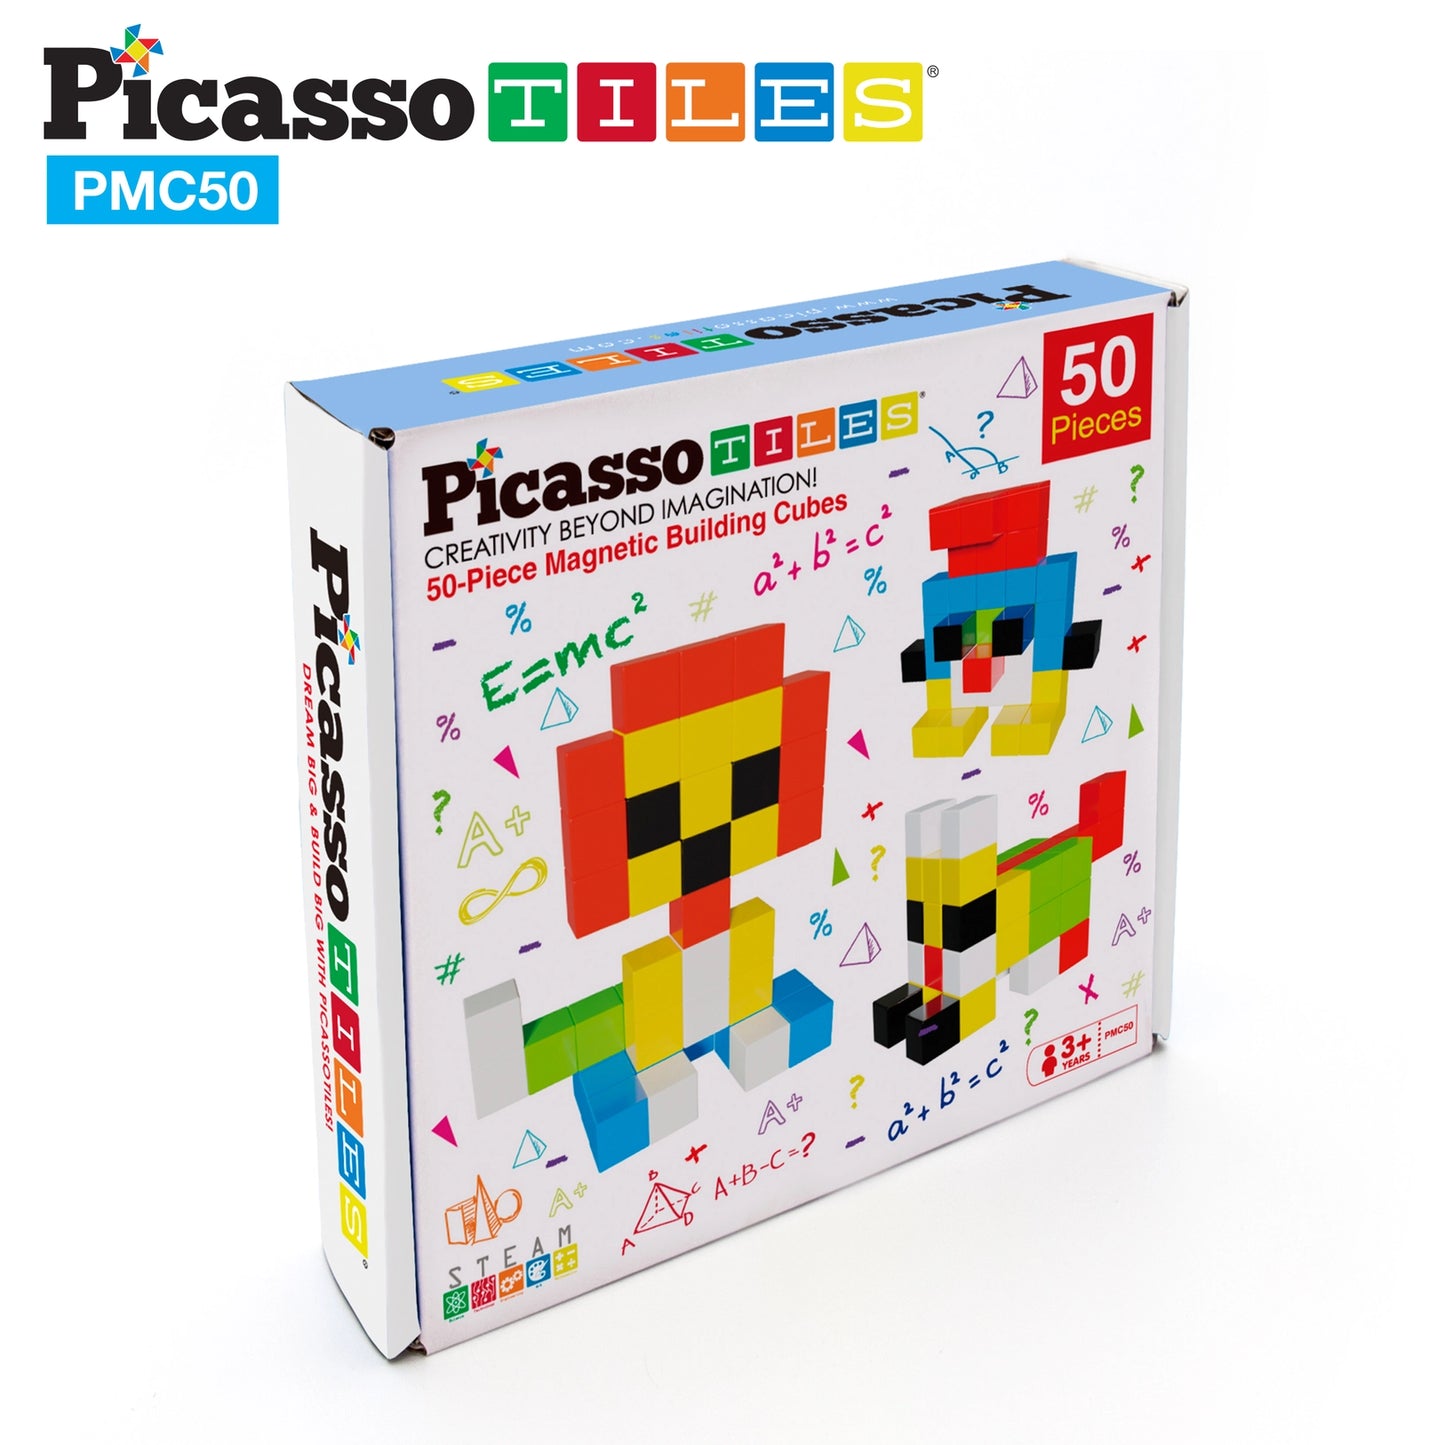 PicassoTiles 50pc 1" Pixel Magnetic Cube Set